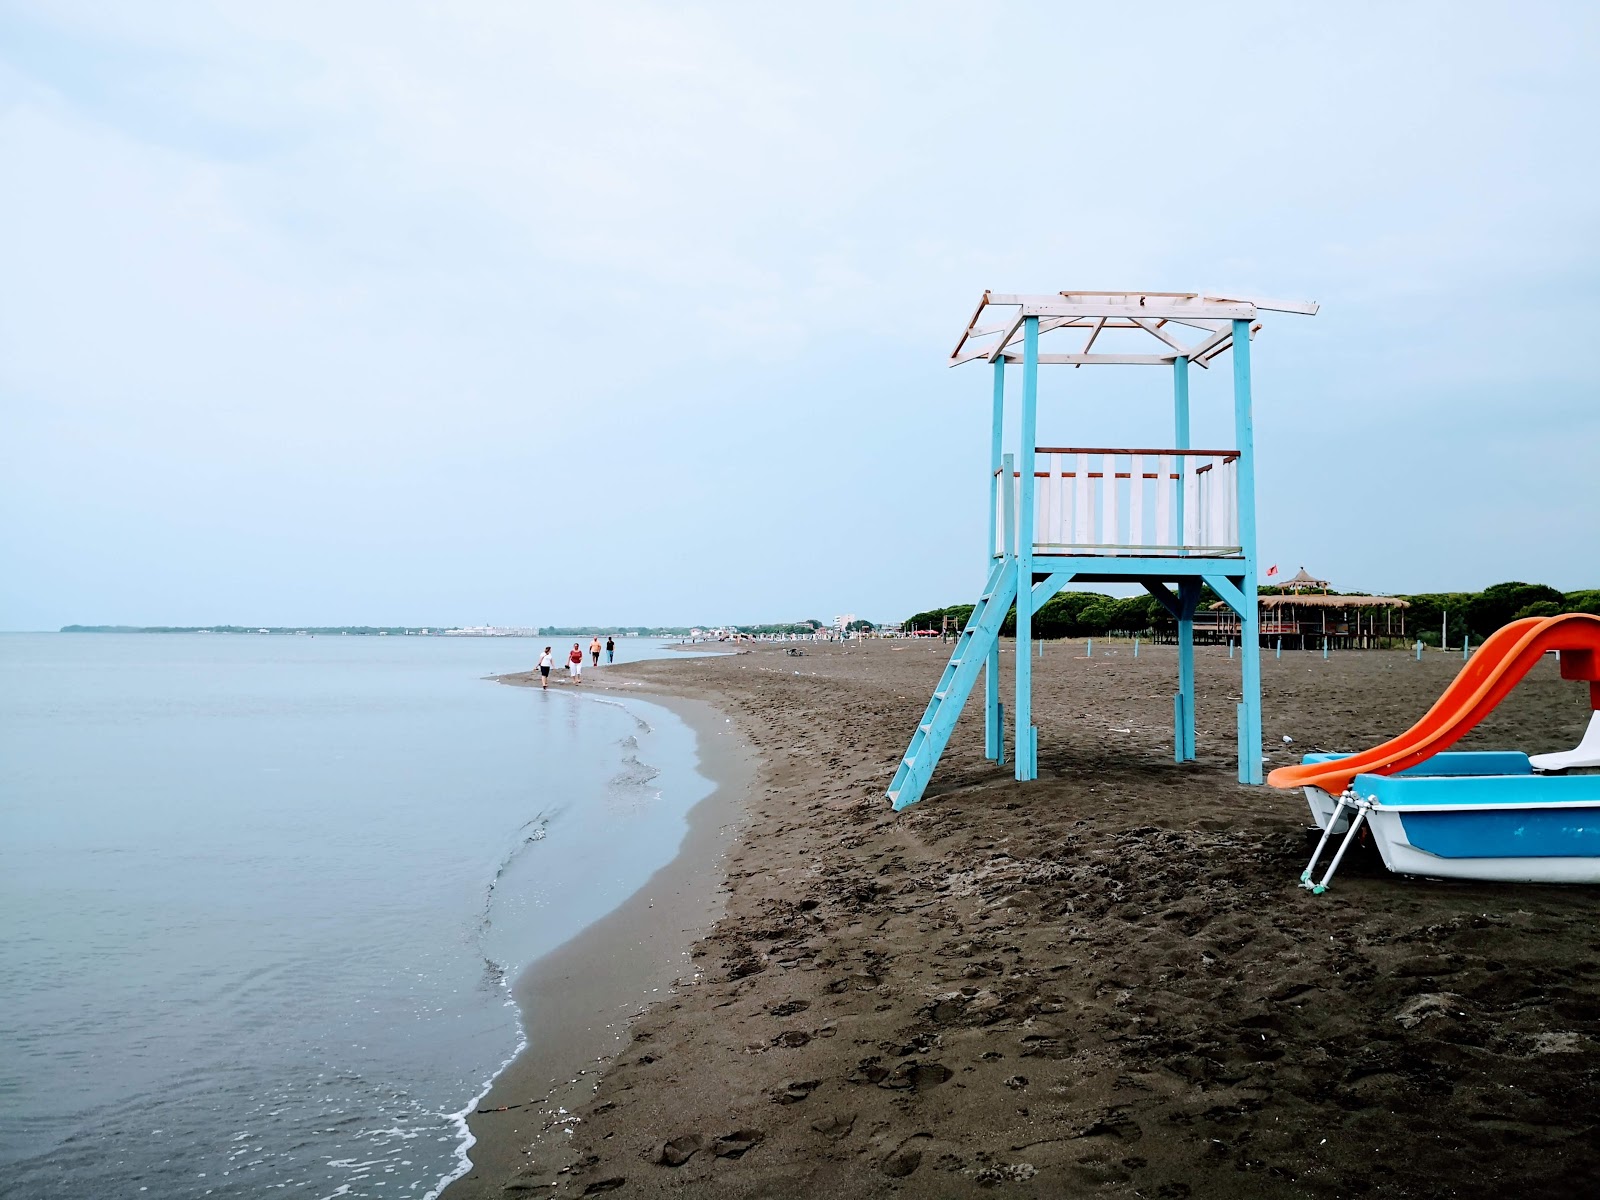 Plazhi Ada'in fotoğrafı plaj tatil beldesi alanı